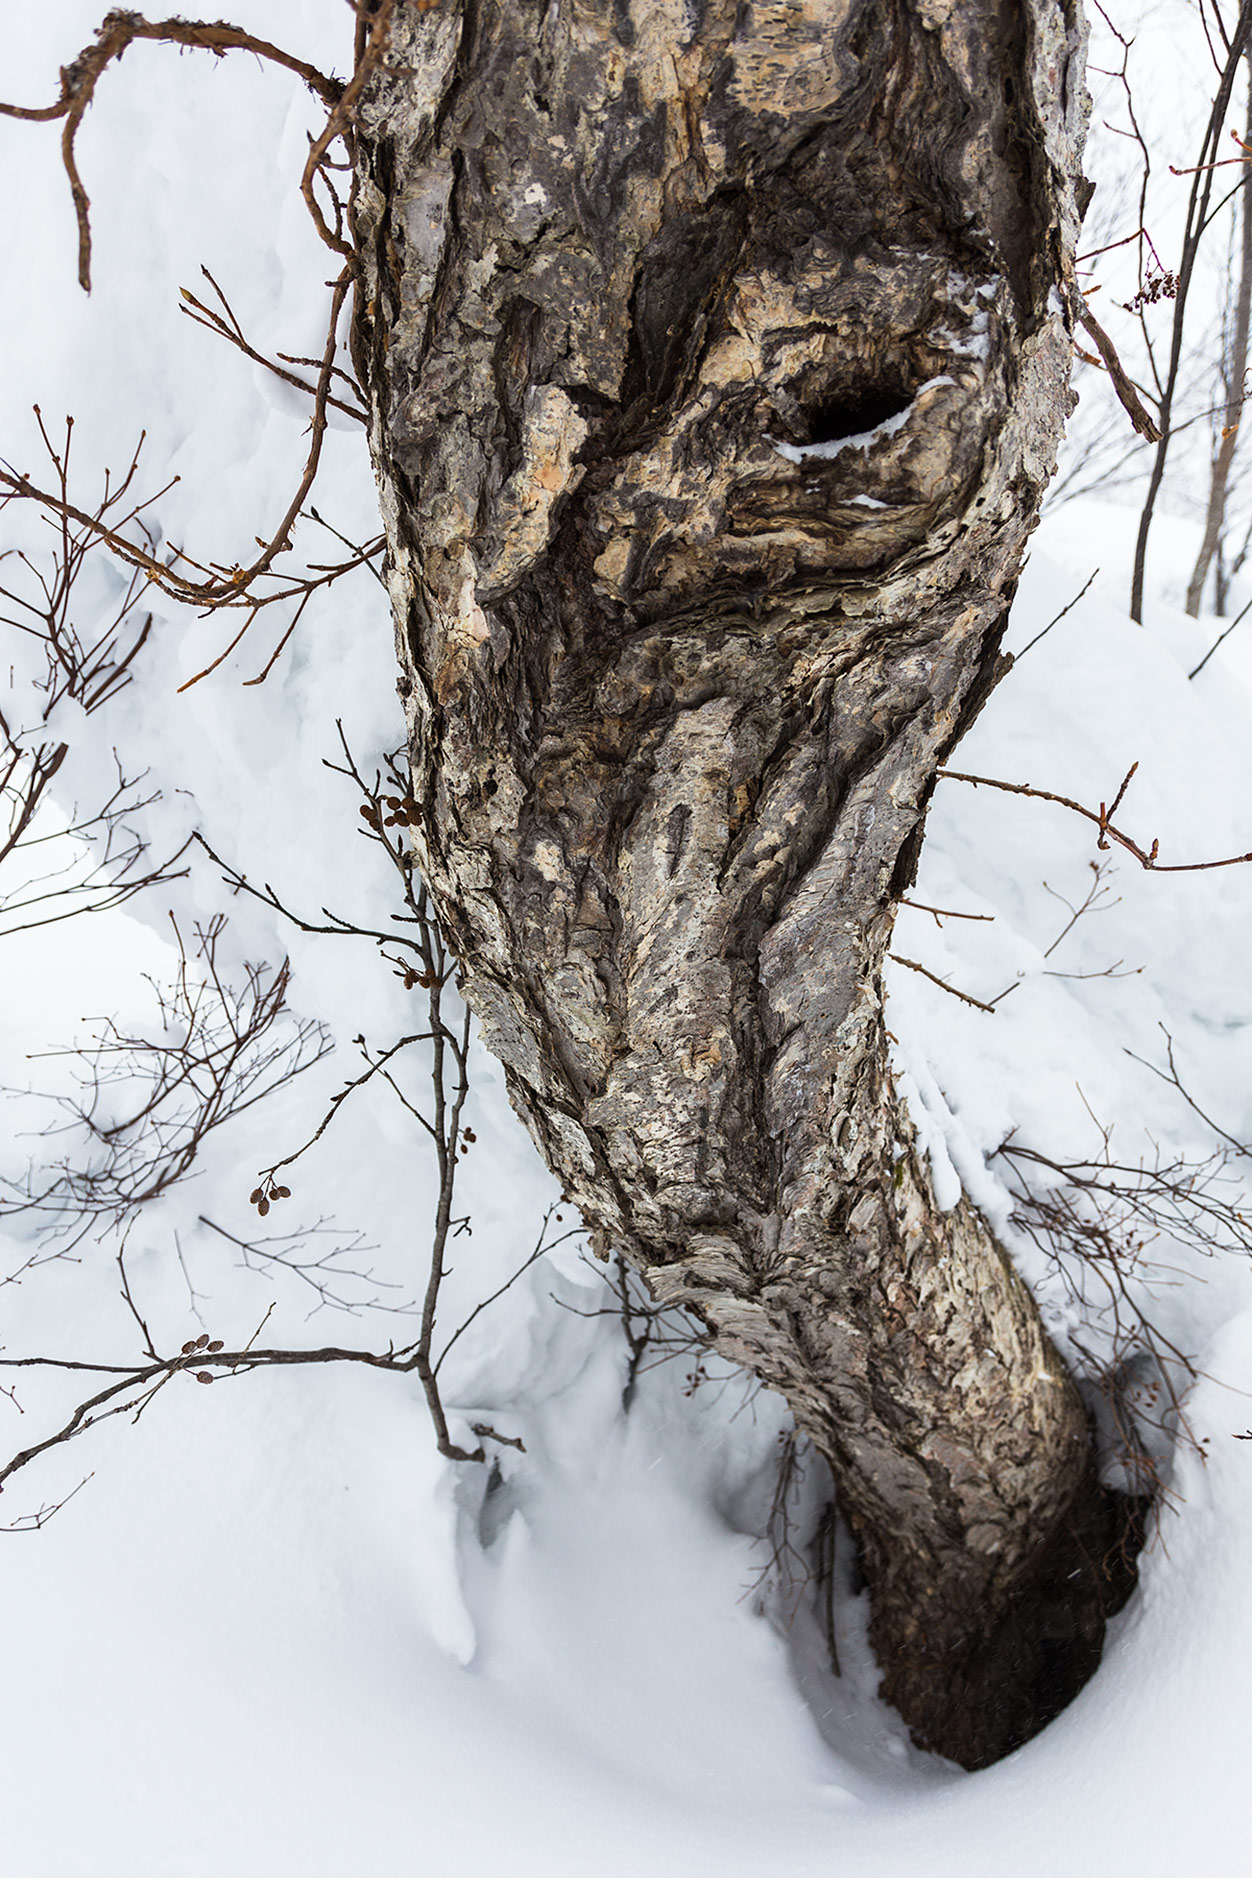 Vaikka tämä Kiroron puu on ilmeeltään pelottava ja lumi syvää, ei tänne kätkeydy samalla tavalla vaarallisia puukaivoja kuin havupuualueelle. Esimerkiksi Pohjois-Amerikassa runkojen lähelle oksien väliin jäävästä ilmasta muodostuvat puukaivot ovat todellin